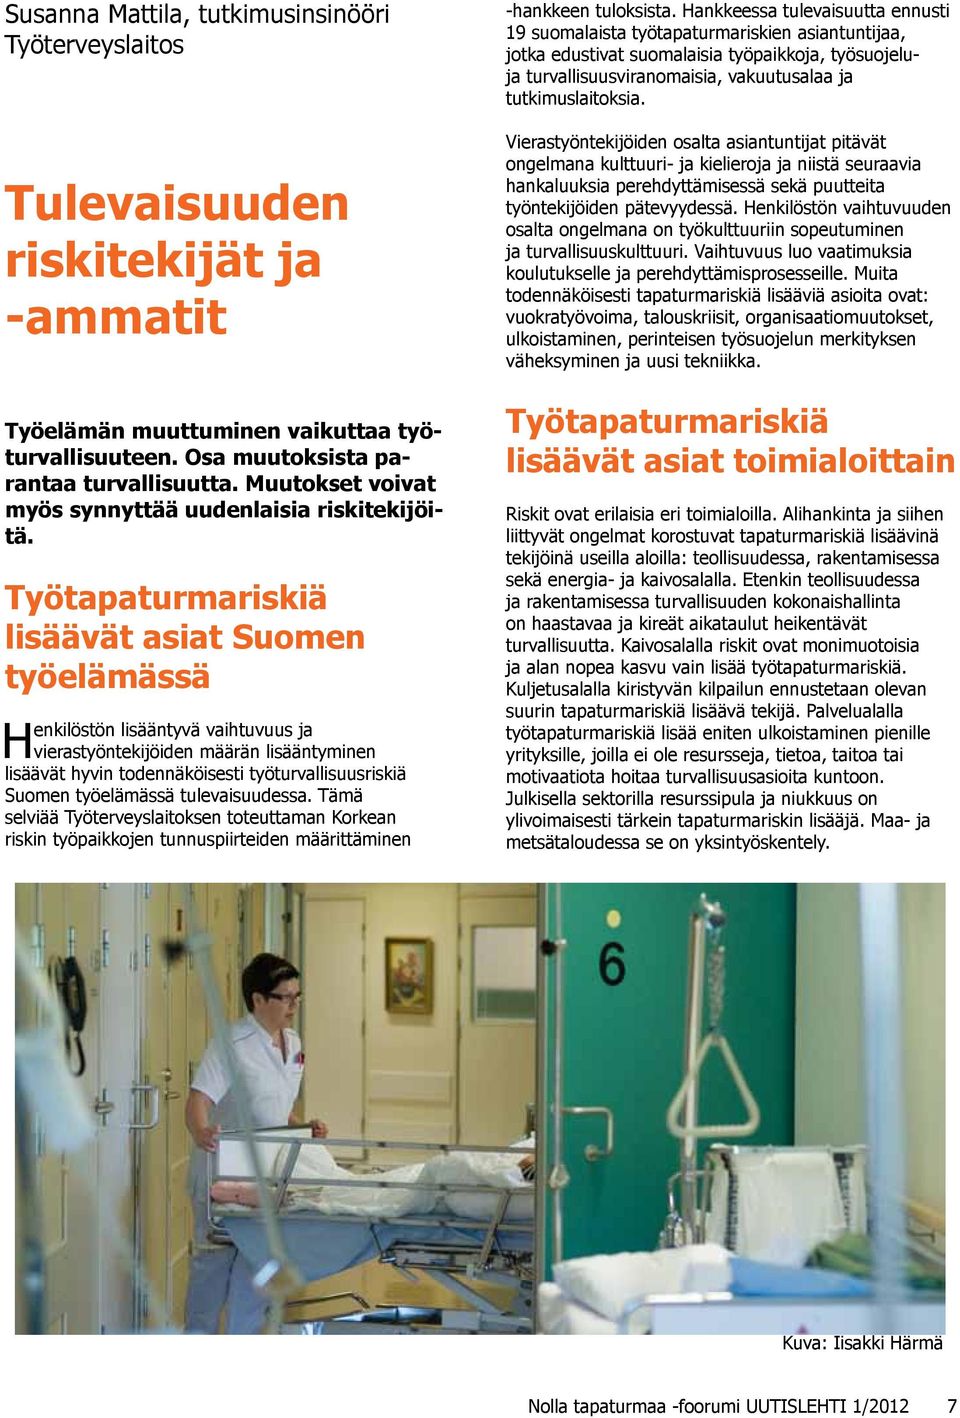 Työtapaturmariskiä lisäävät asiat Suomen työelämässä Henkilöstön lisääntyvä vaihtuvuus ja vierastyöntekijöiden määrän lisääntyminen lisäävät hyvin todennäköisesti työturvallisuusriskiä Suomen